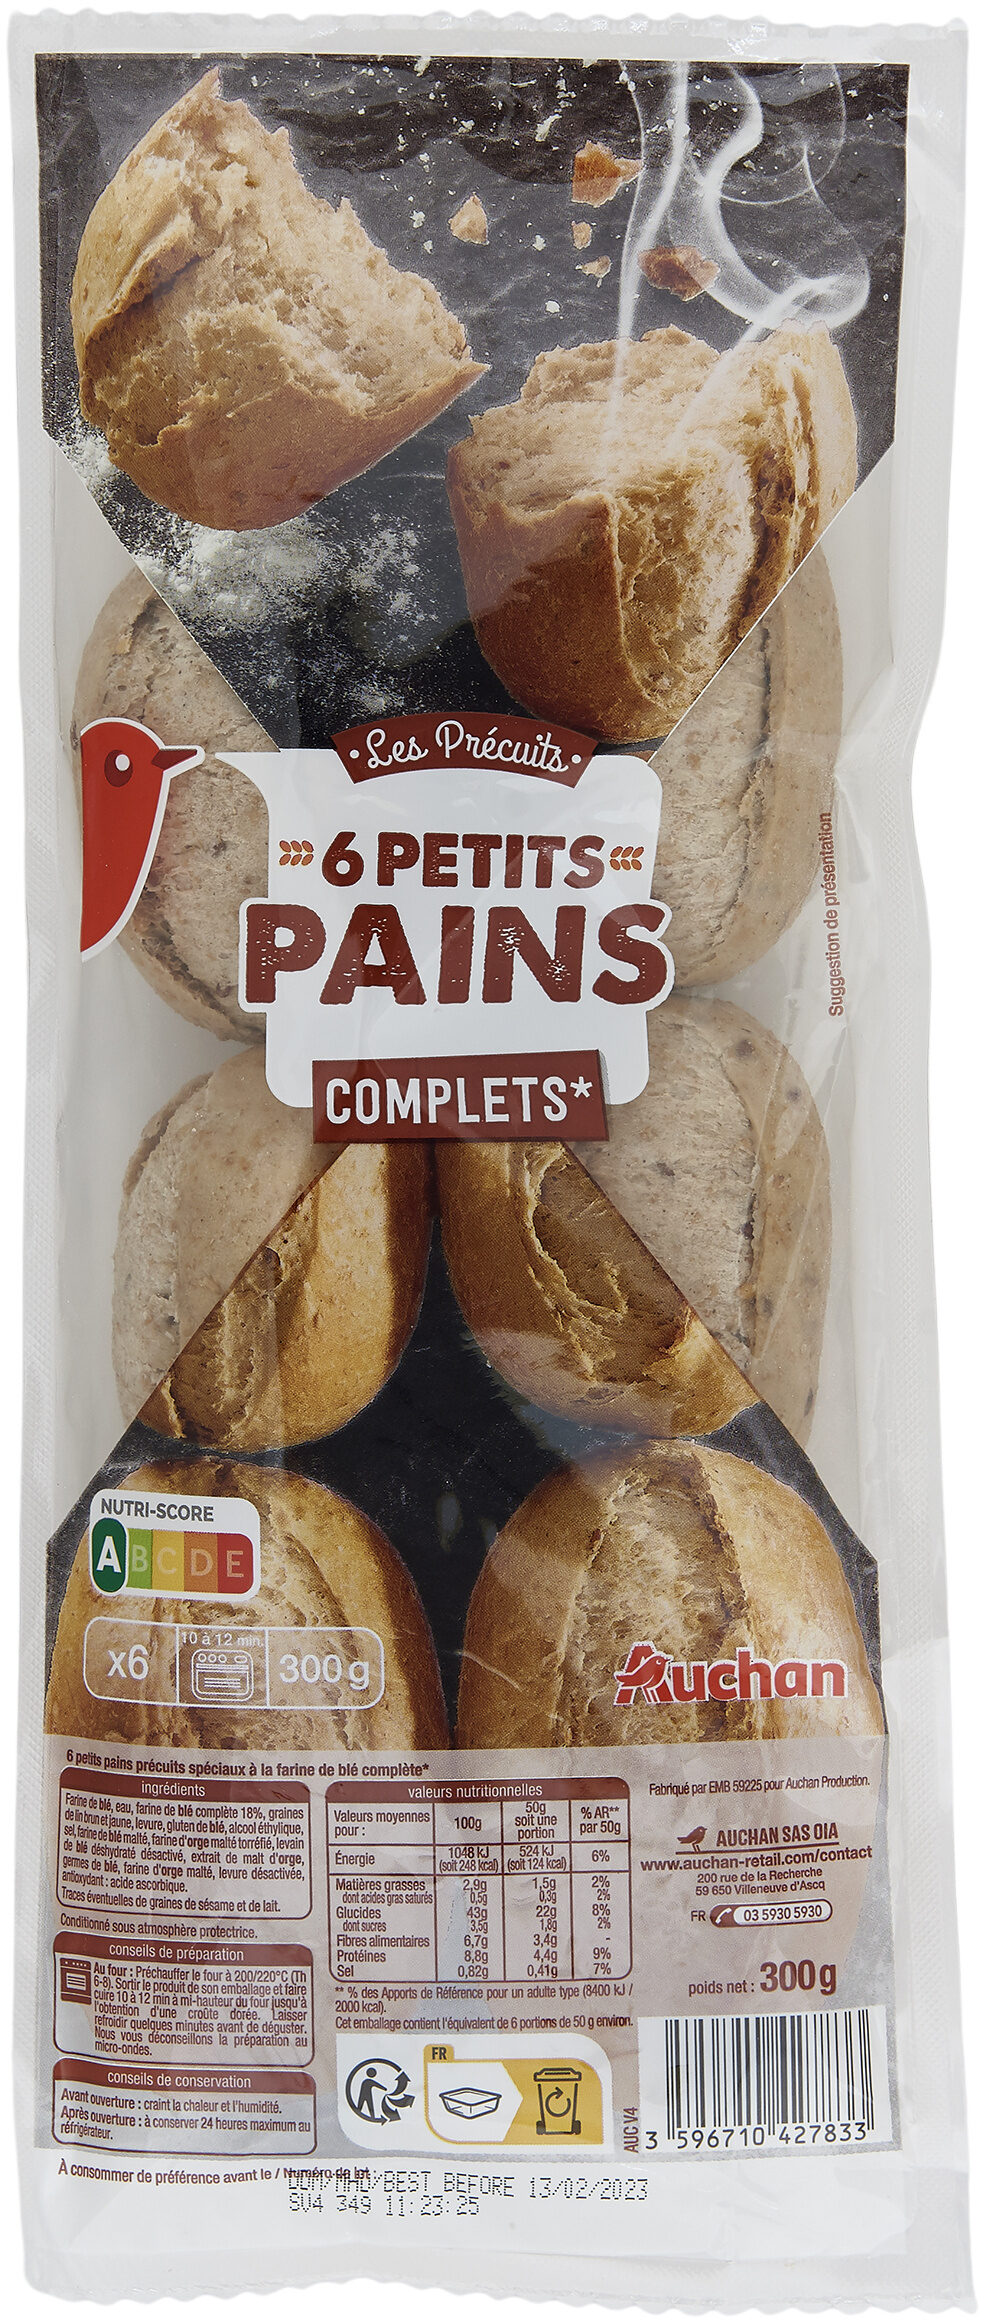 6 Petits pains précuits spéciaux à la farine de blé complète - Product - fr